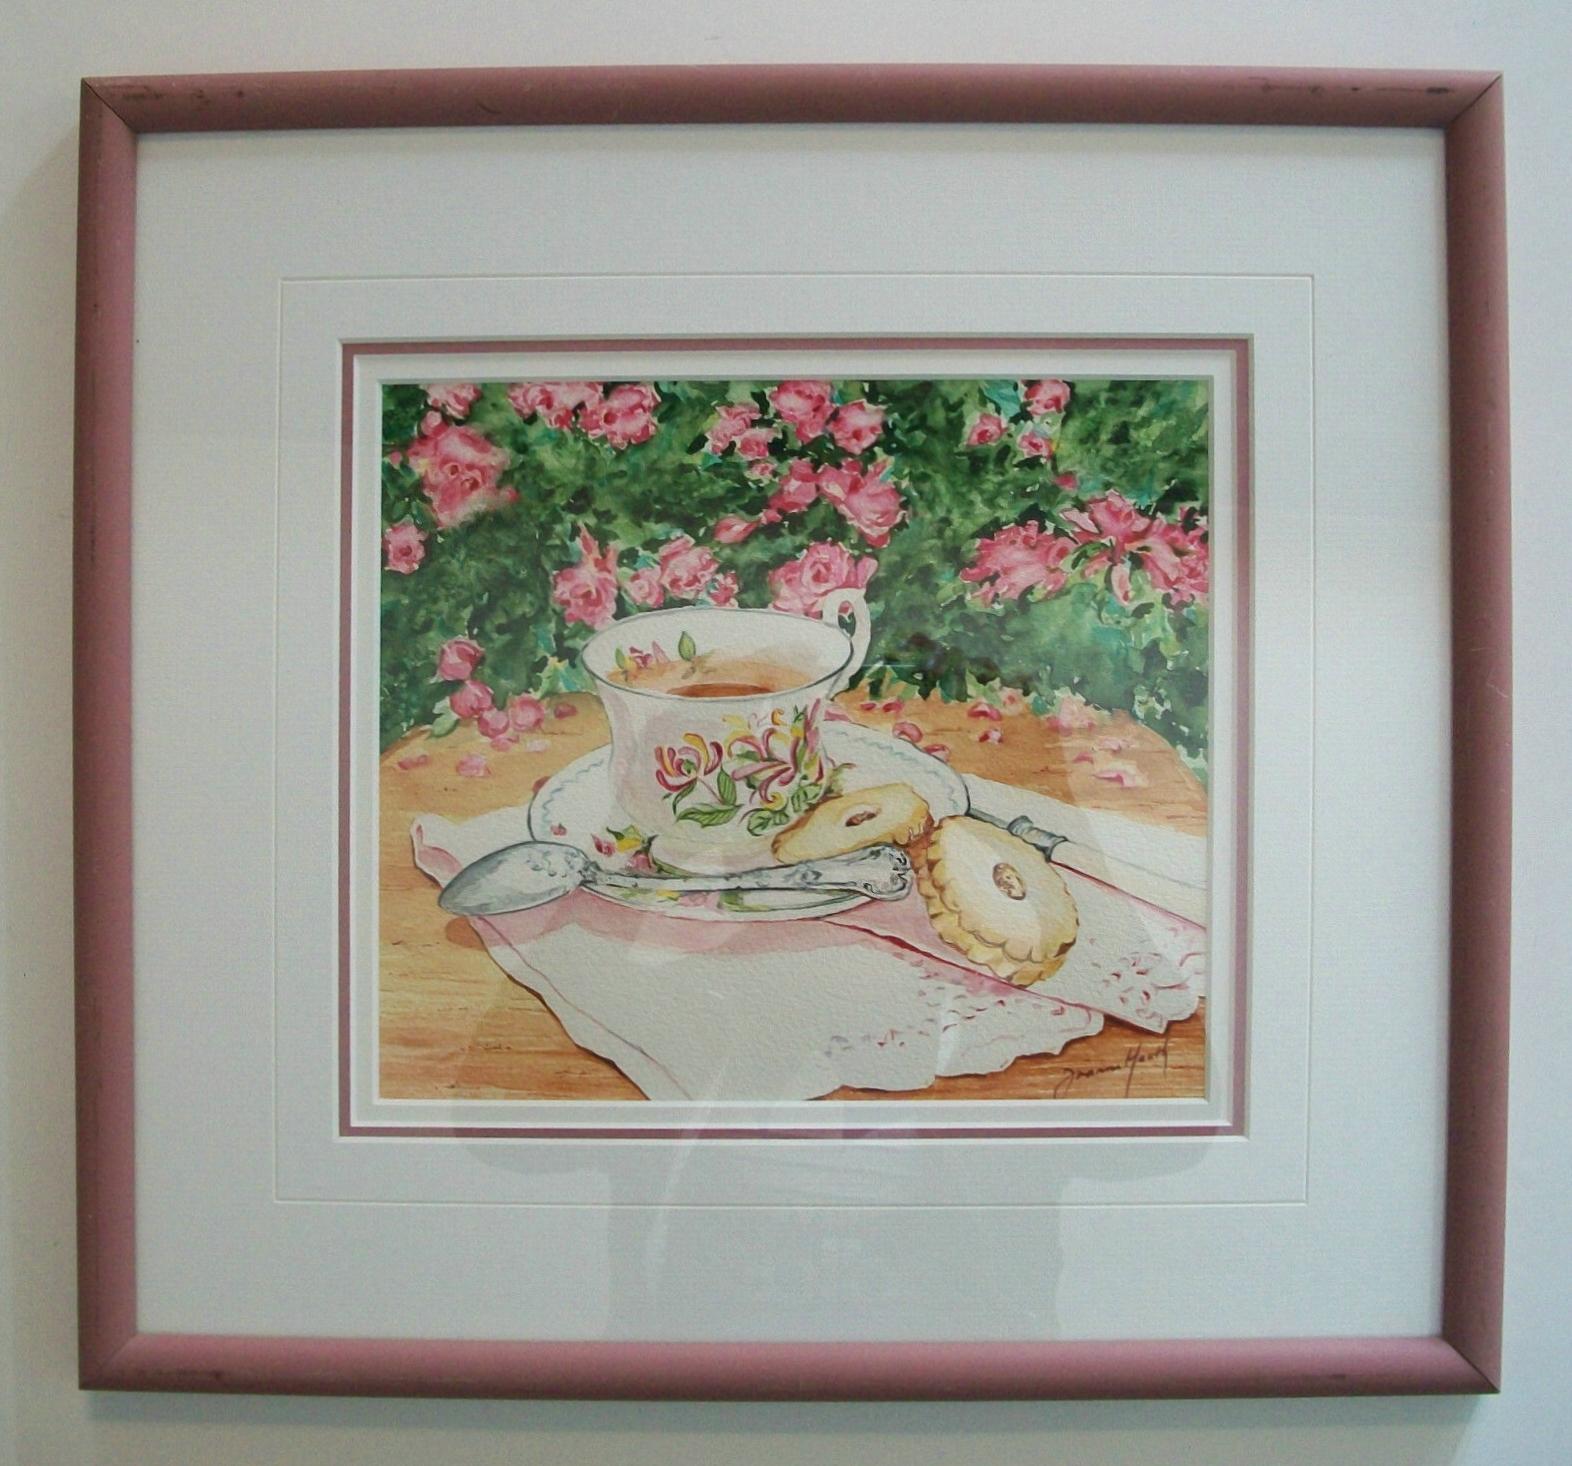 Joanne Heath-Menger- 'Afternoon Tea' - Vintage Aquarell über Graphit auf Papier - signiert unten rechts - signiert und betitelt verso - Galerie/Katalognummer verso W/C 121-4 - fertiggestellt mit drei abgeschrägten, matten Tafeln - mattierter